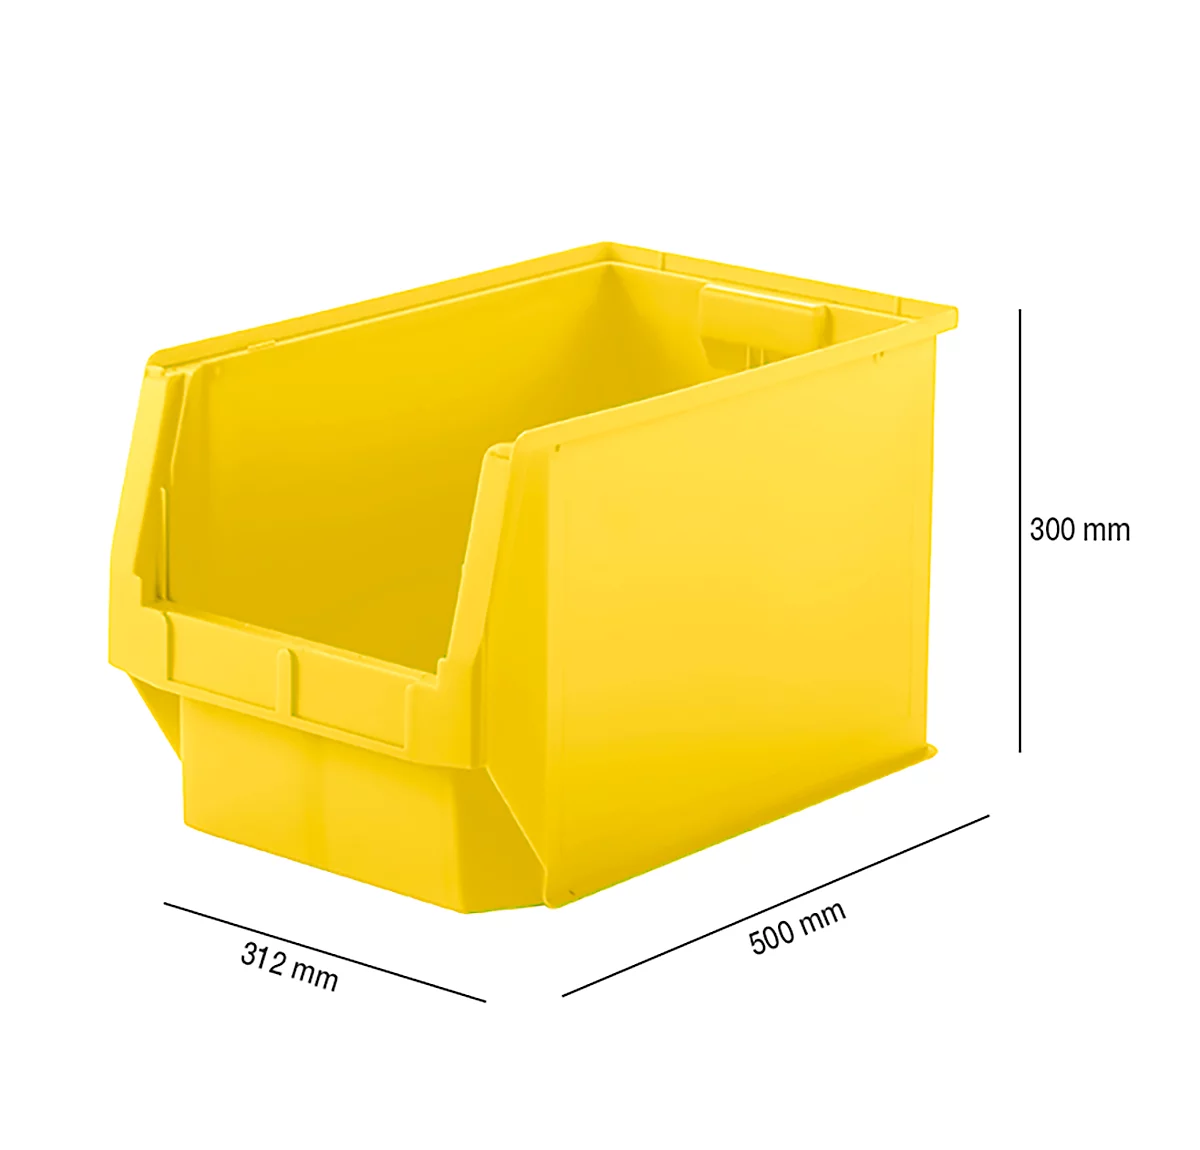 Sichtlagerkasten SSI Schäfer LF 533, Polypropylen, L 500 x B 312 x H 300 mm, 38 l, gelb